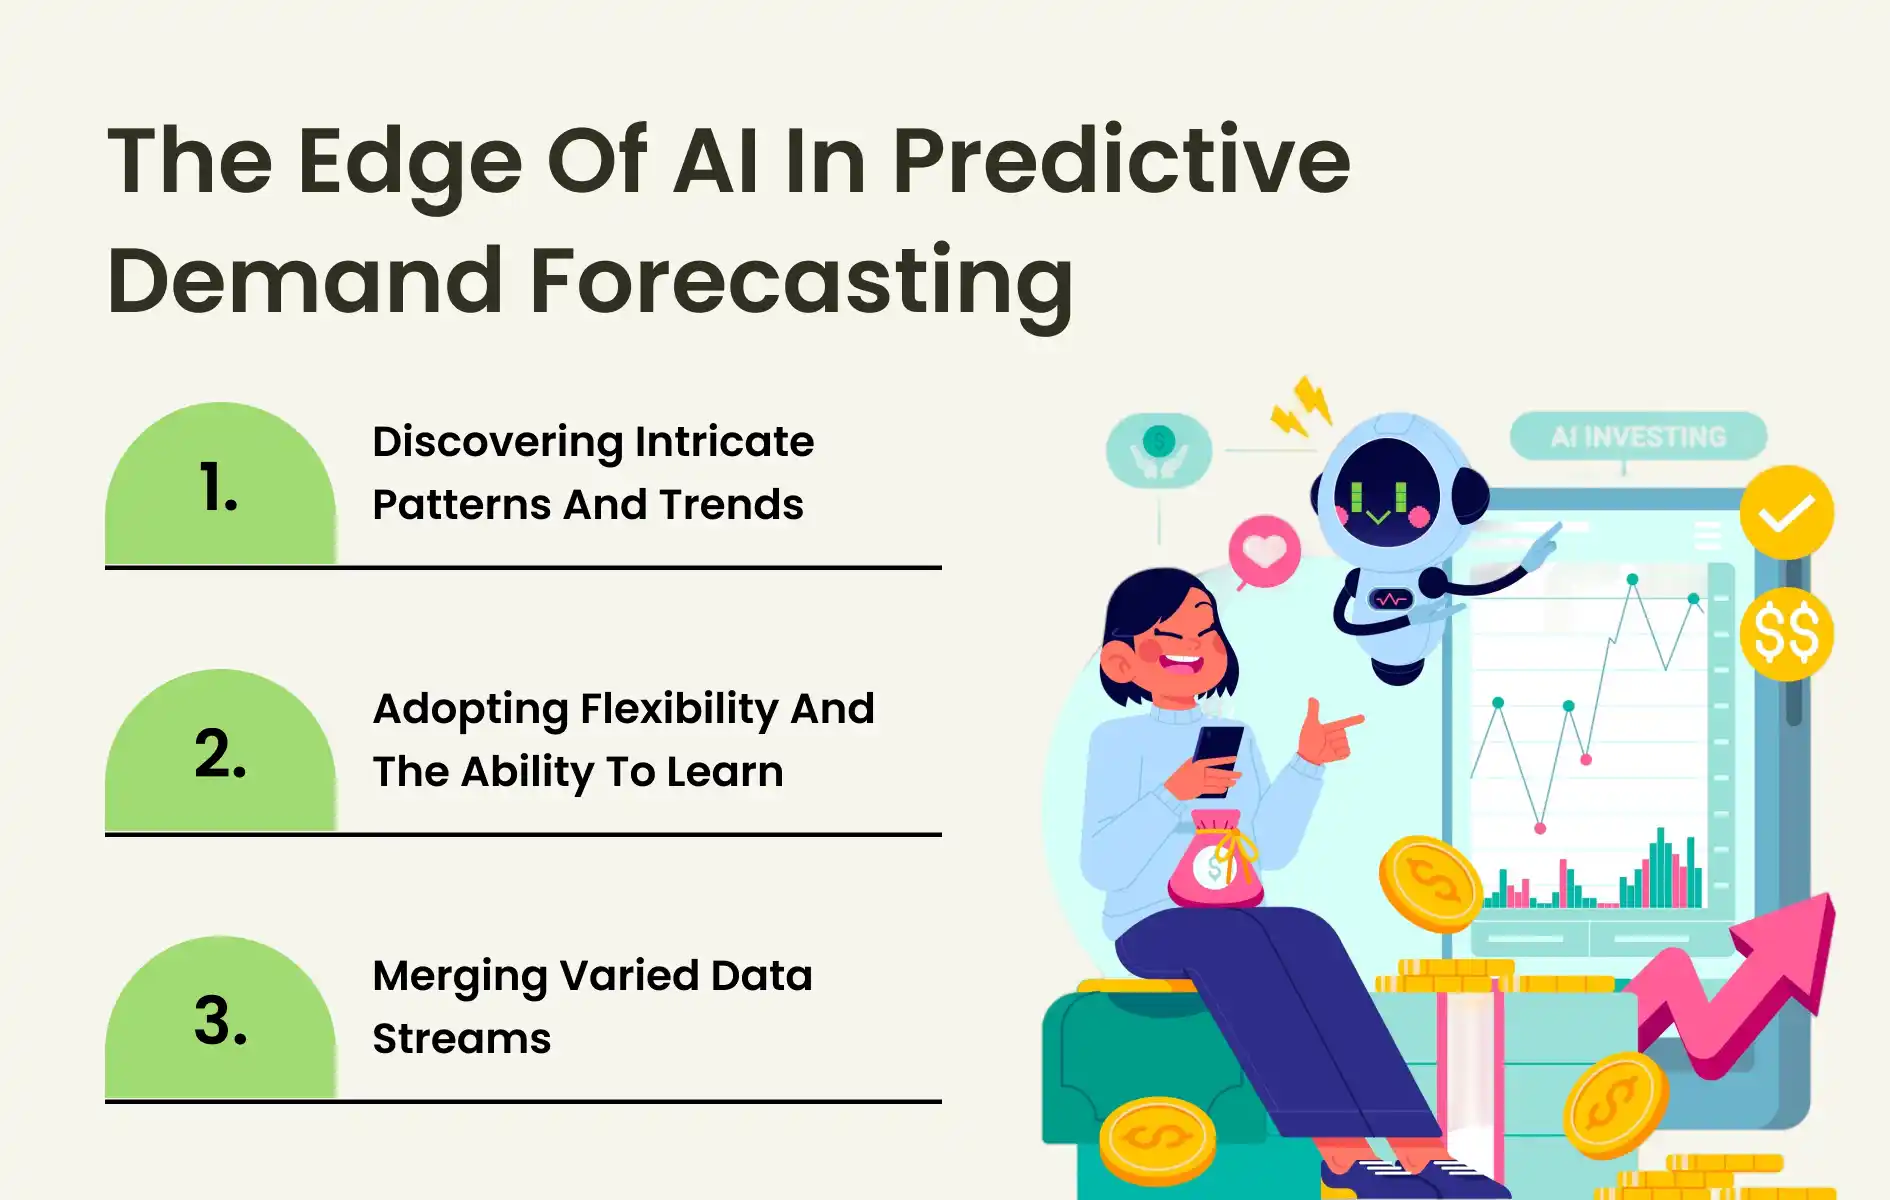 The Edge of AI in Predictive Demand Forecasting